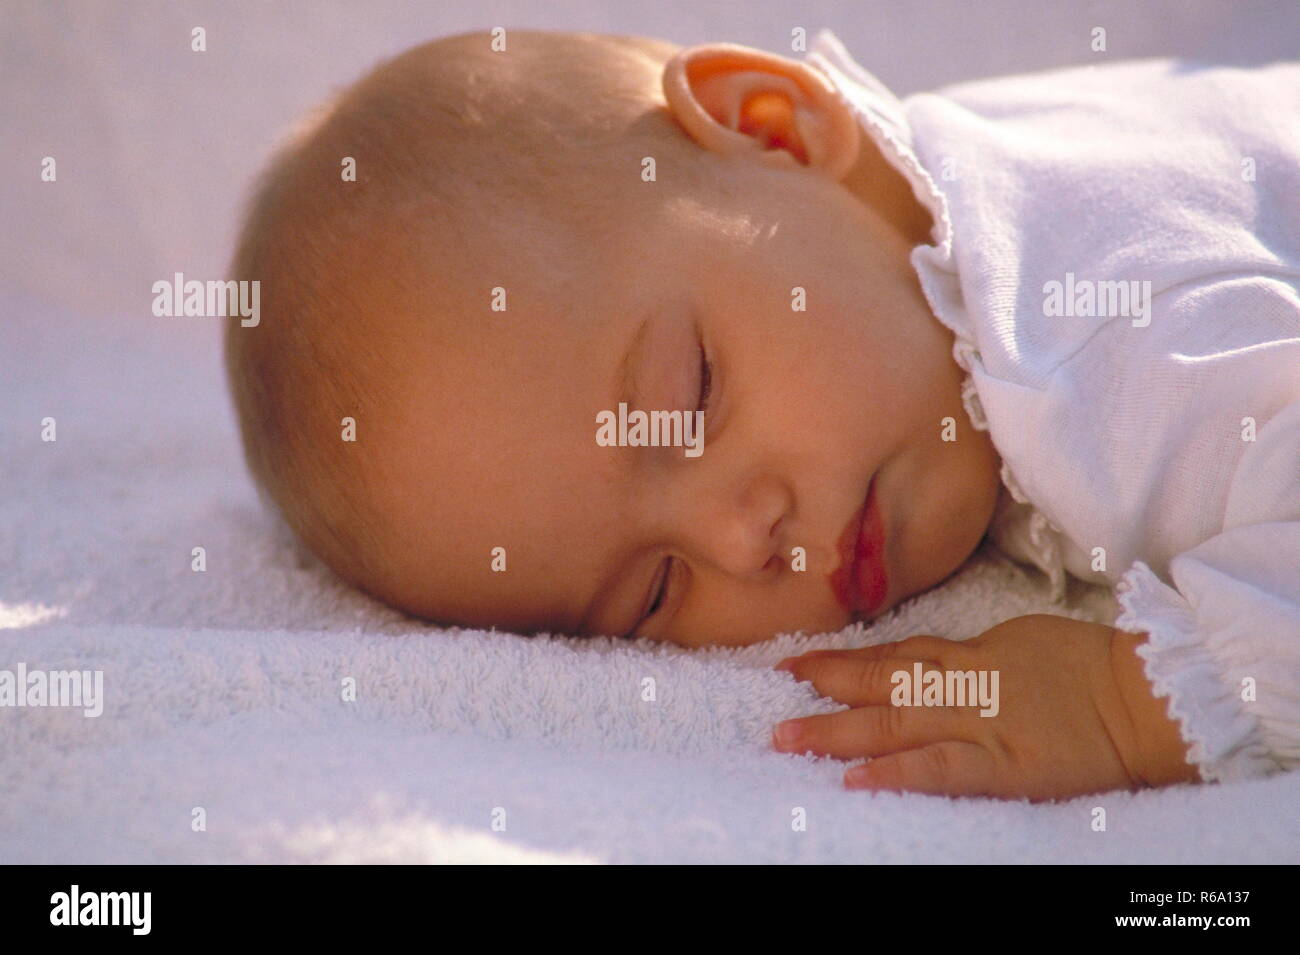 Portrait, Baby, 4 Monate alt, schlaeft in Bauchlage auf einem weissen Frotteehandtuch Stock Photo